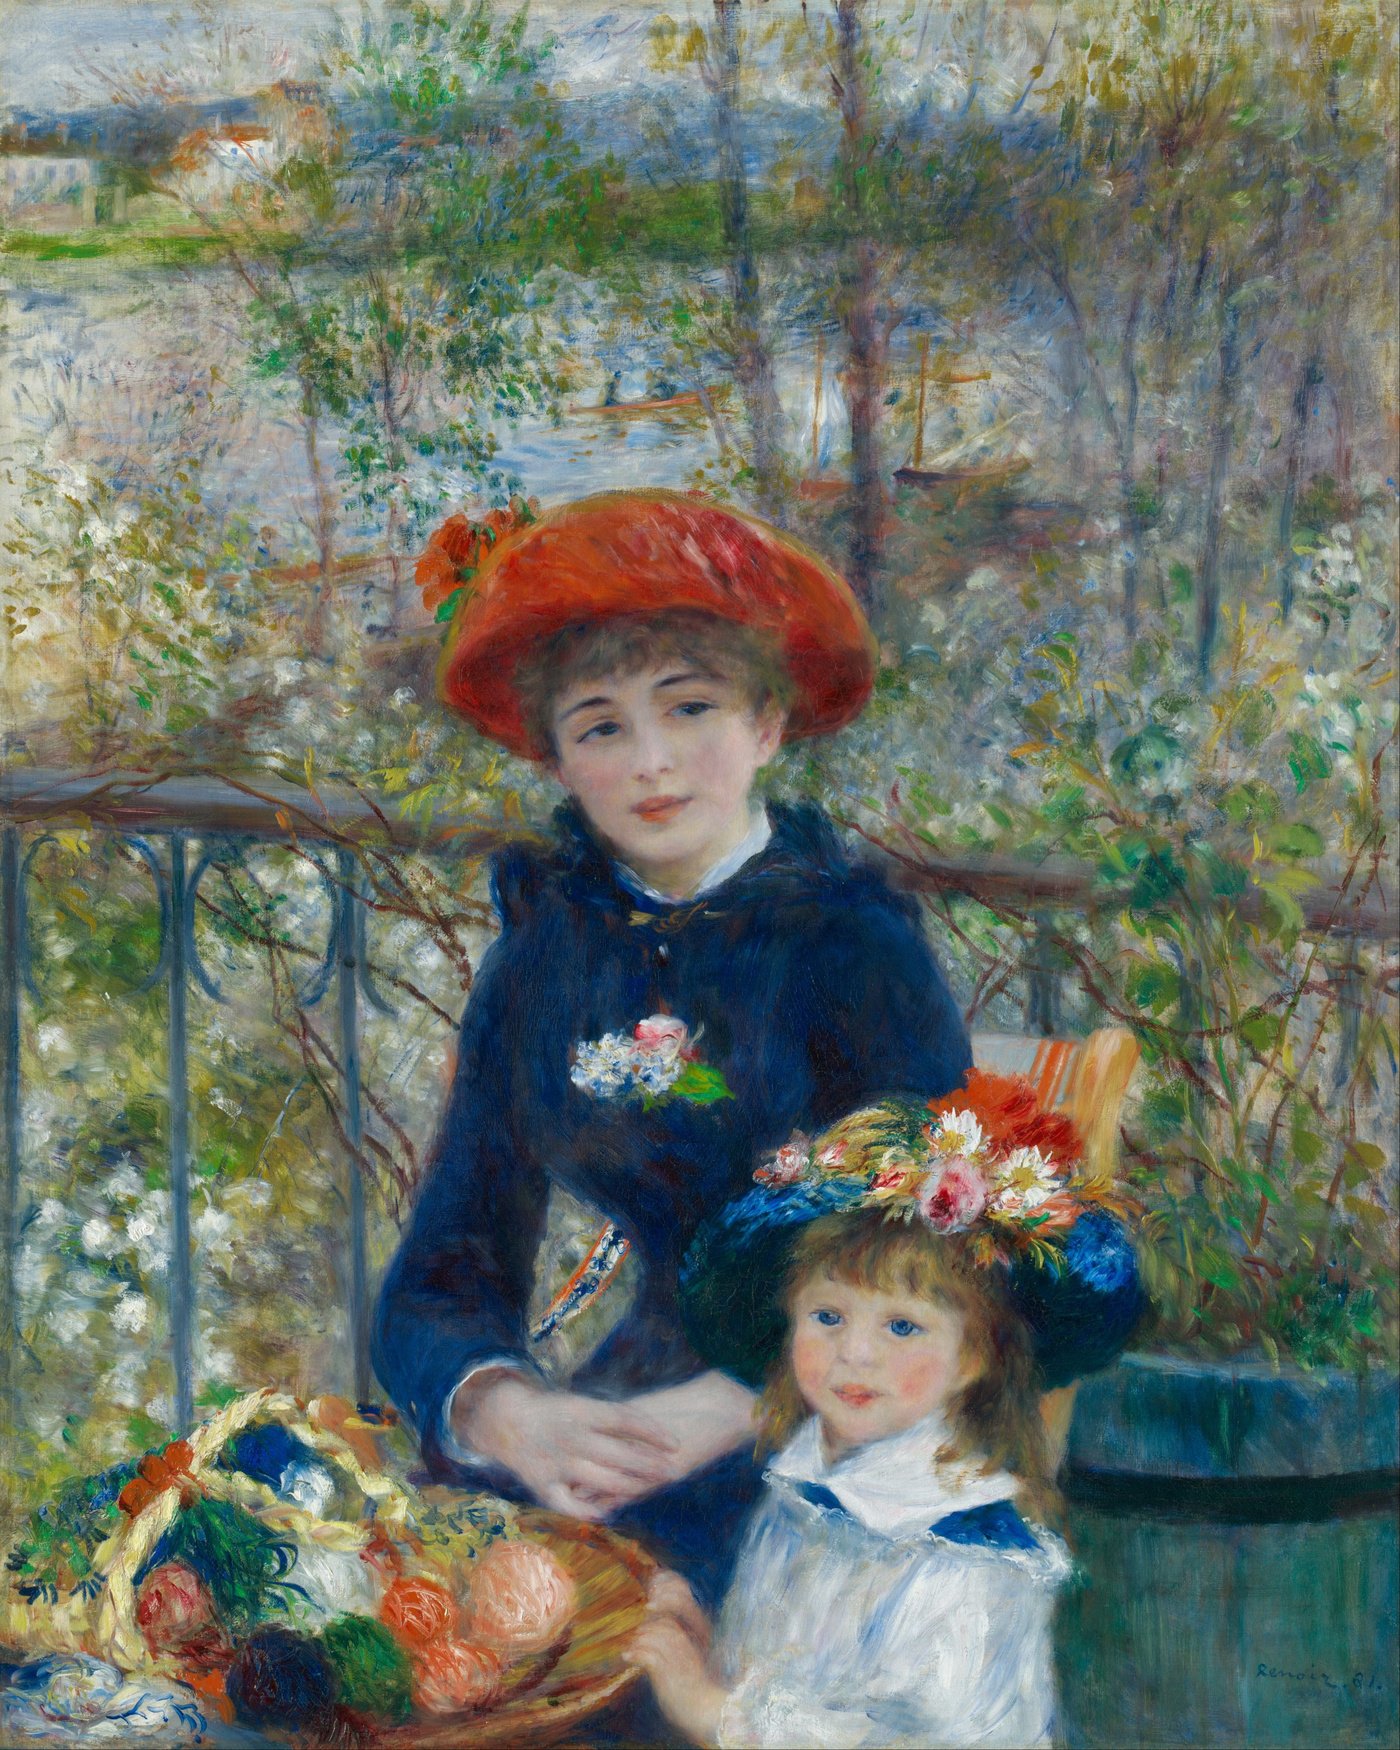 Pierre Auguste Renoir Painting Reproductions For Sale 1st Art